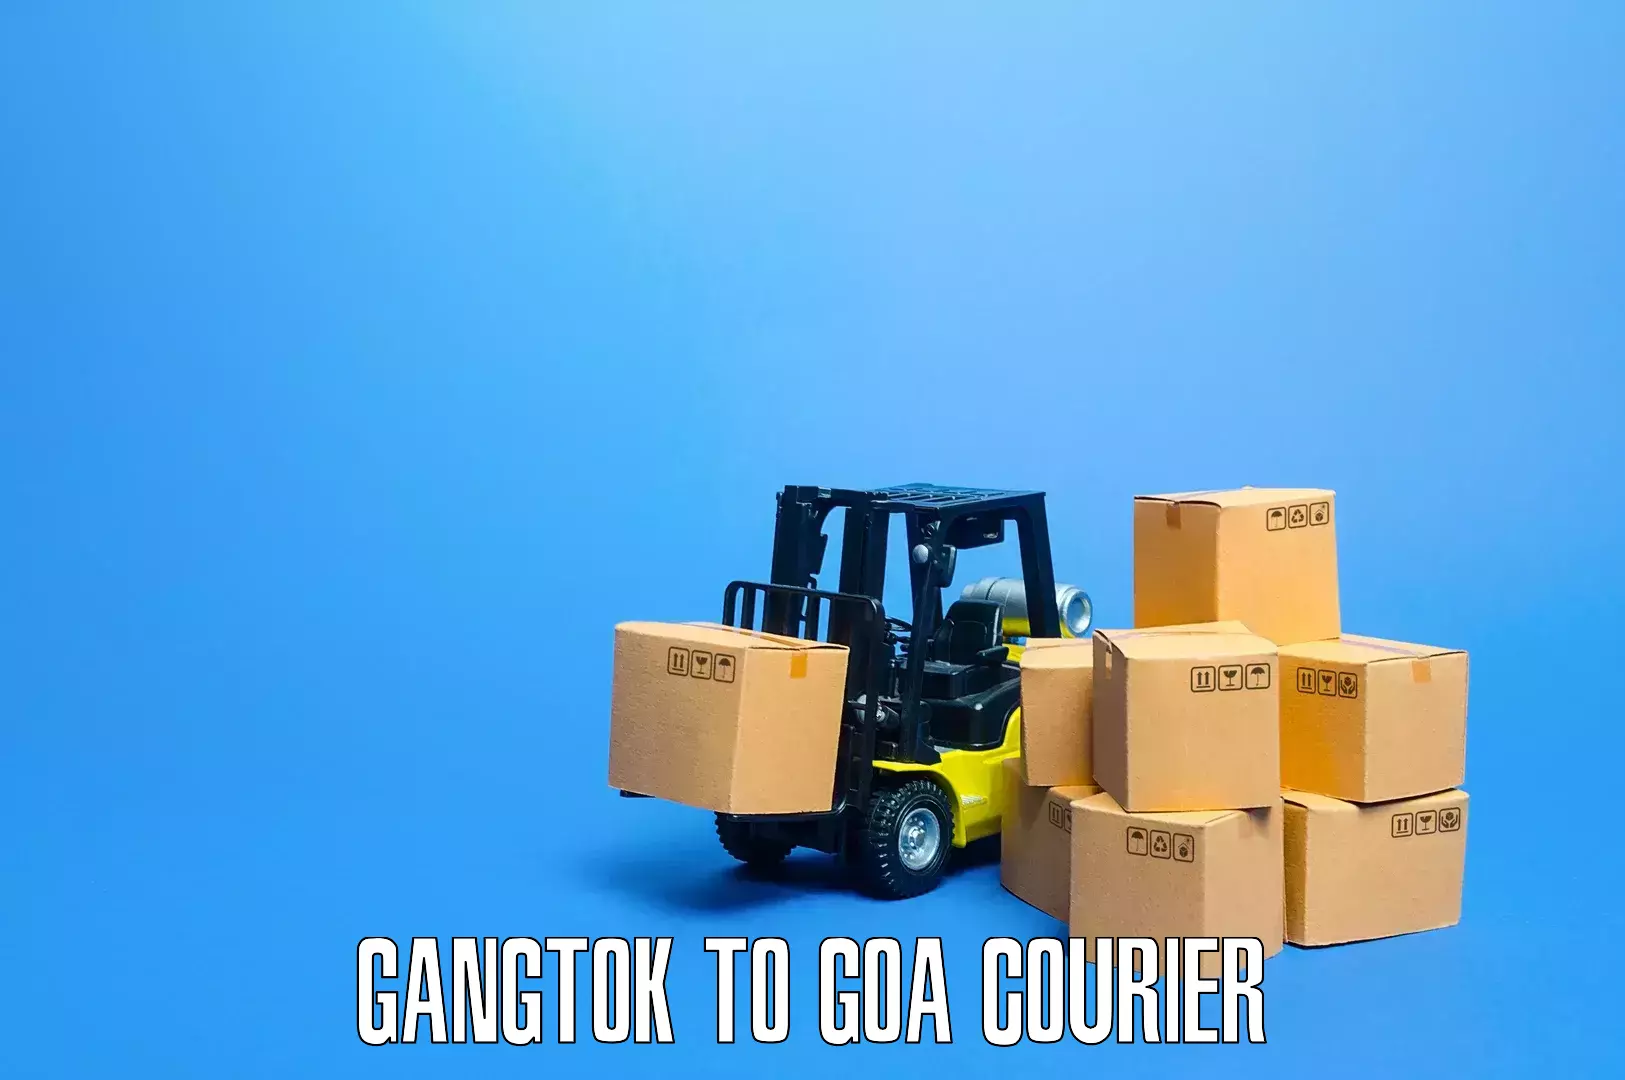 Furniture transport professionals Gangtok to Sanvordem